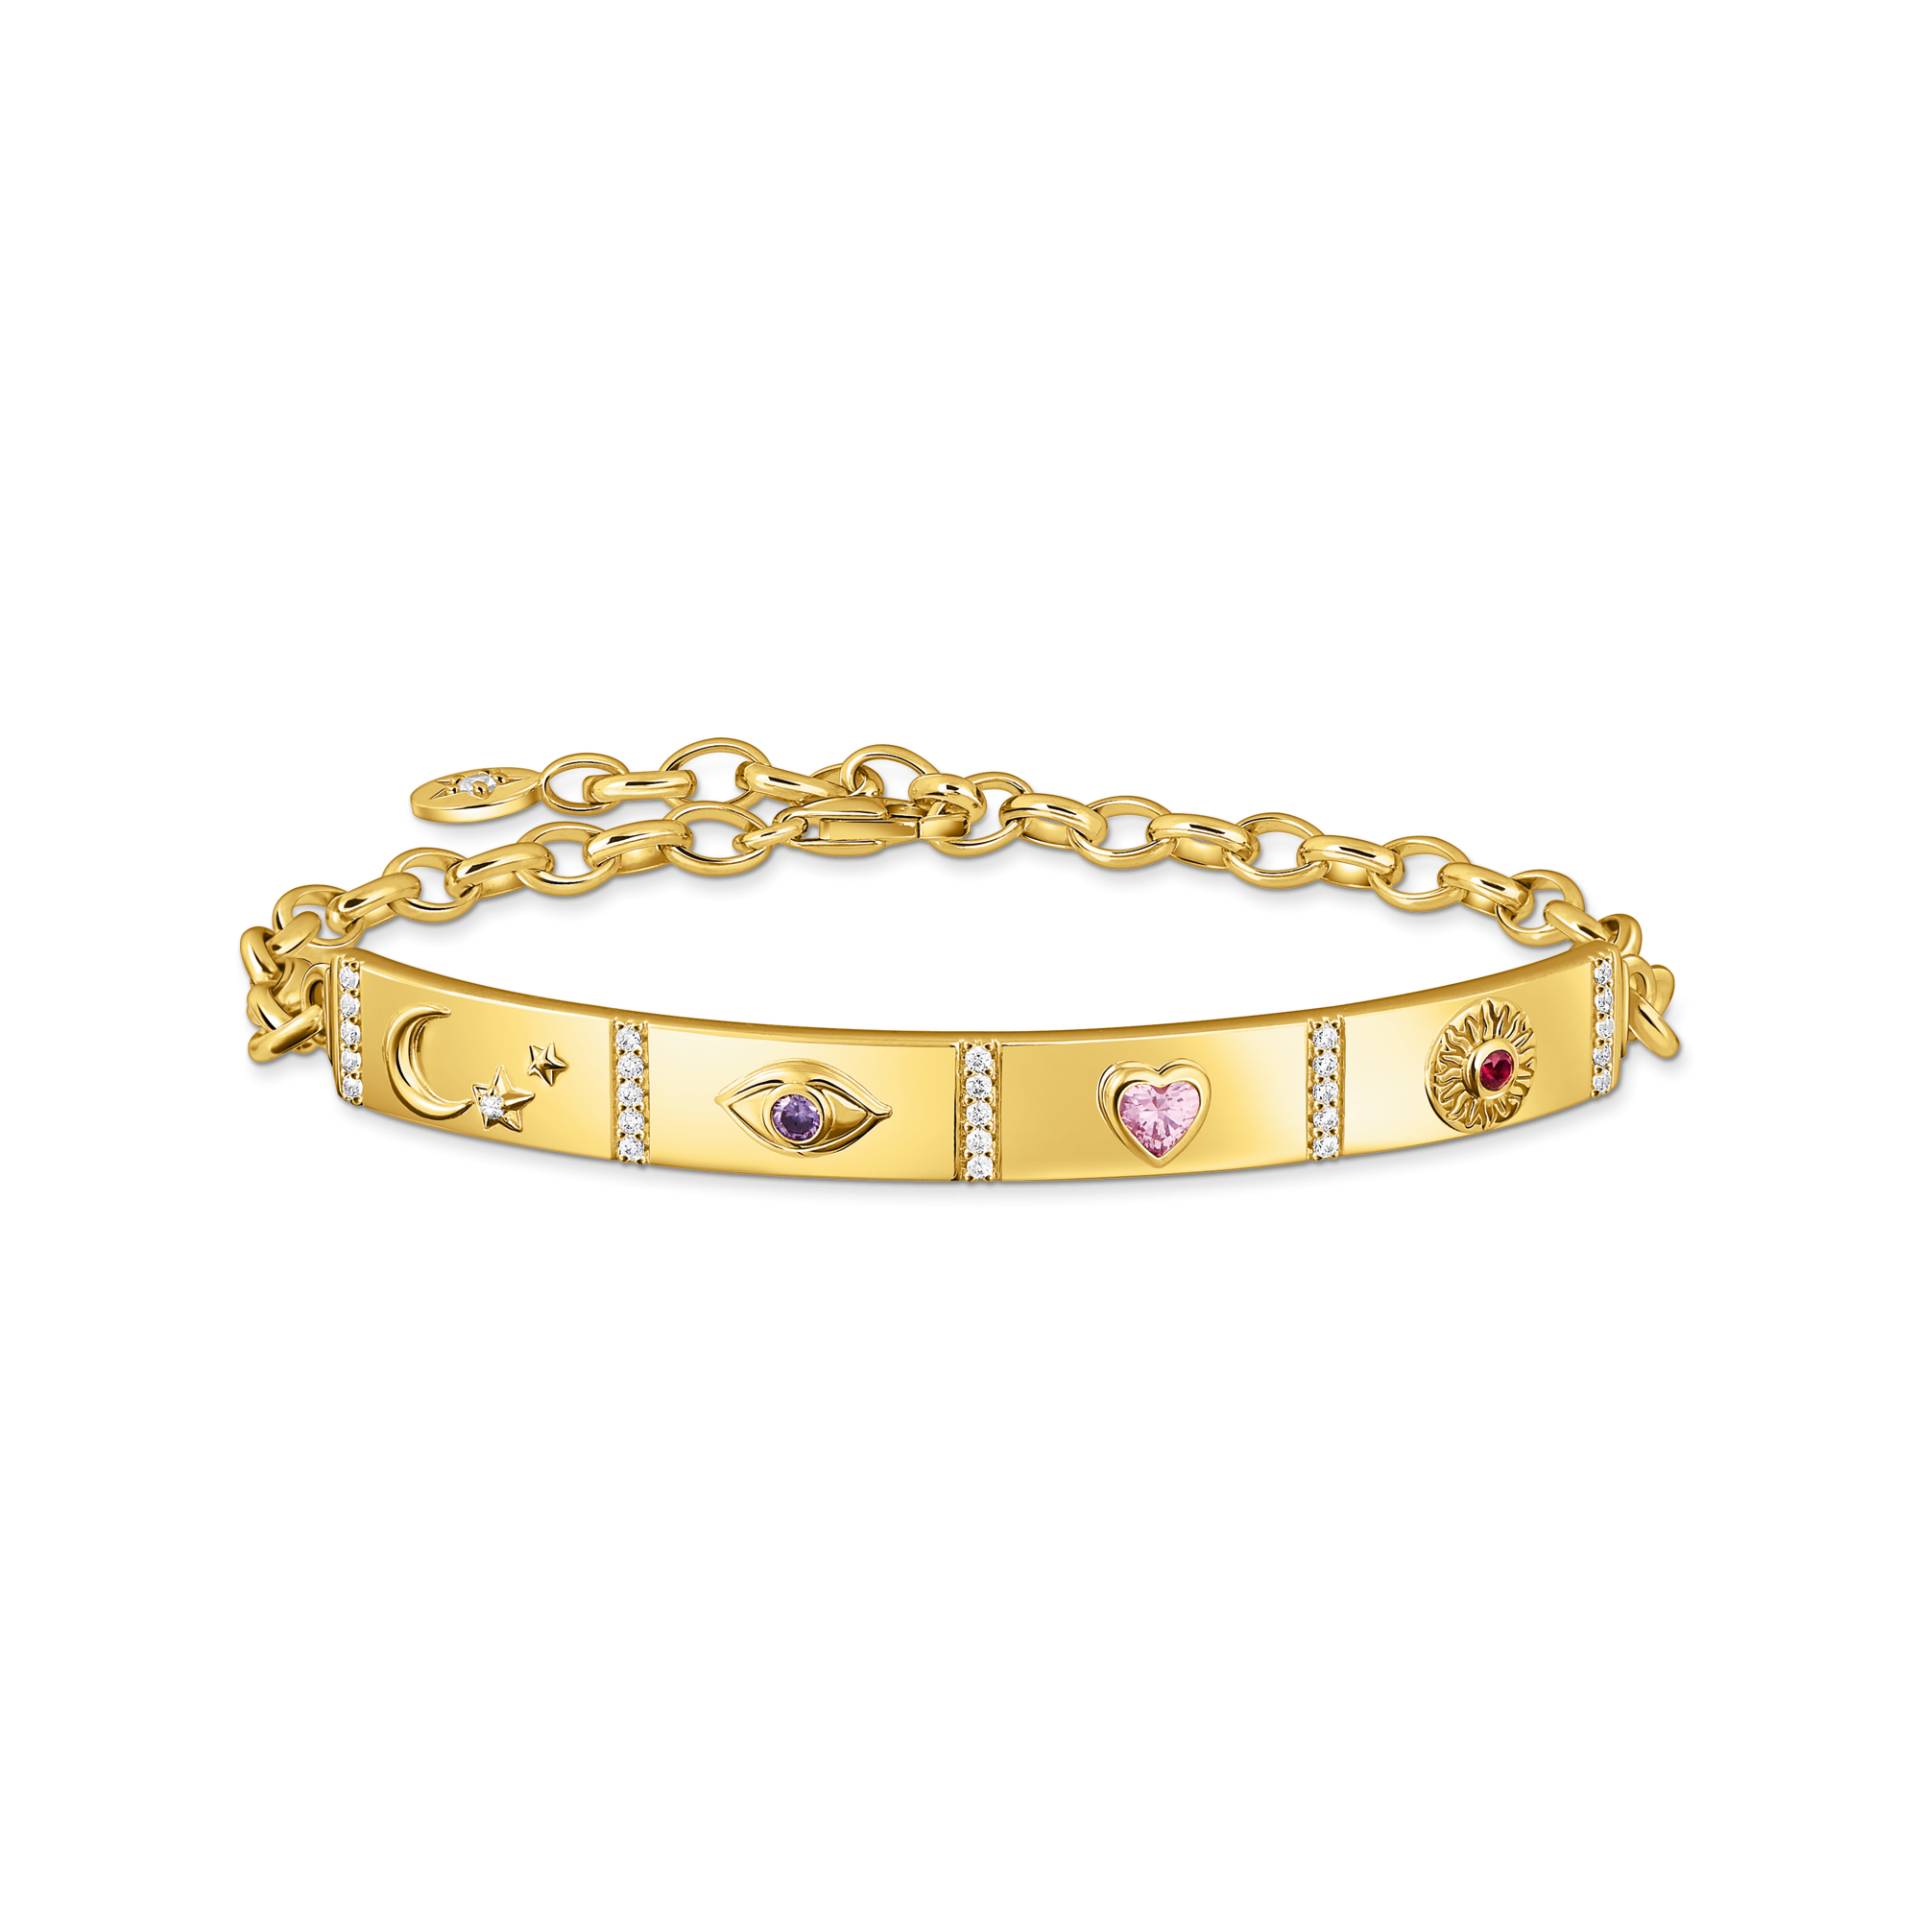 Thomas Sabo Armband mit kosmischen Symbolen und bunten Steinen vergoldet mehrfarbig A2139-995-7-L19V von Thomas Sabo